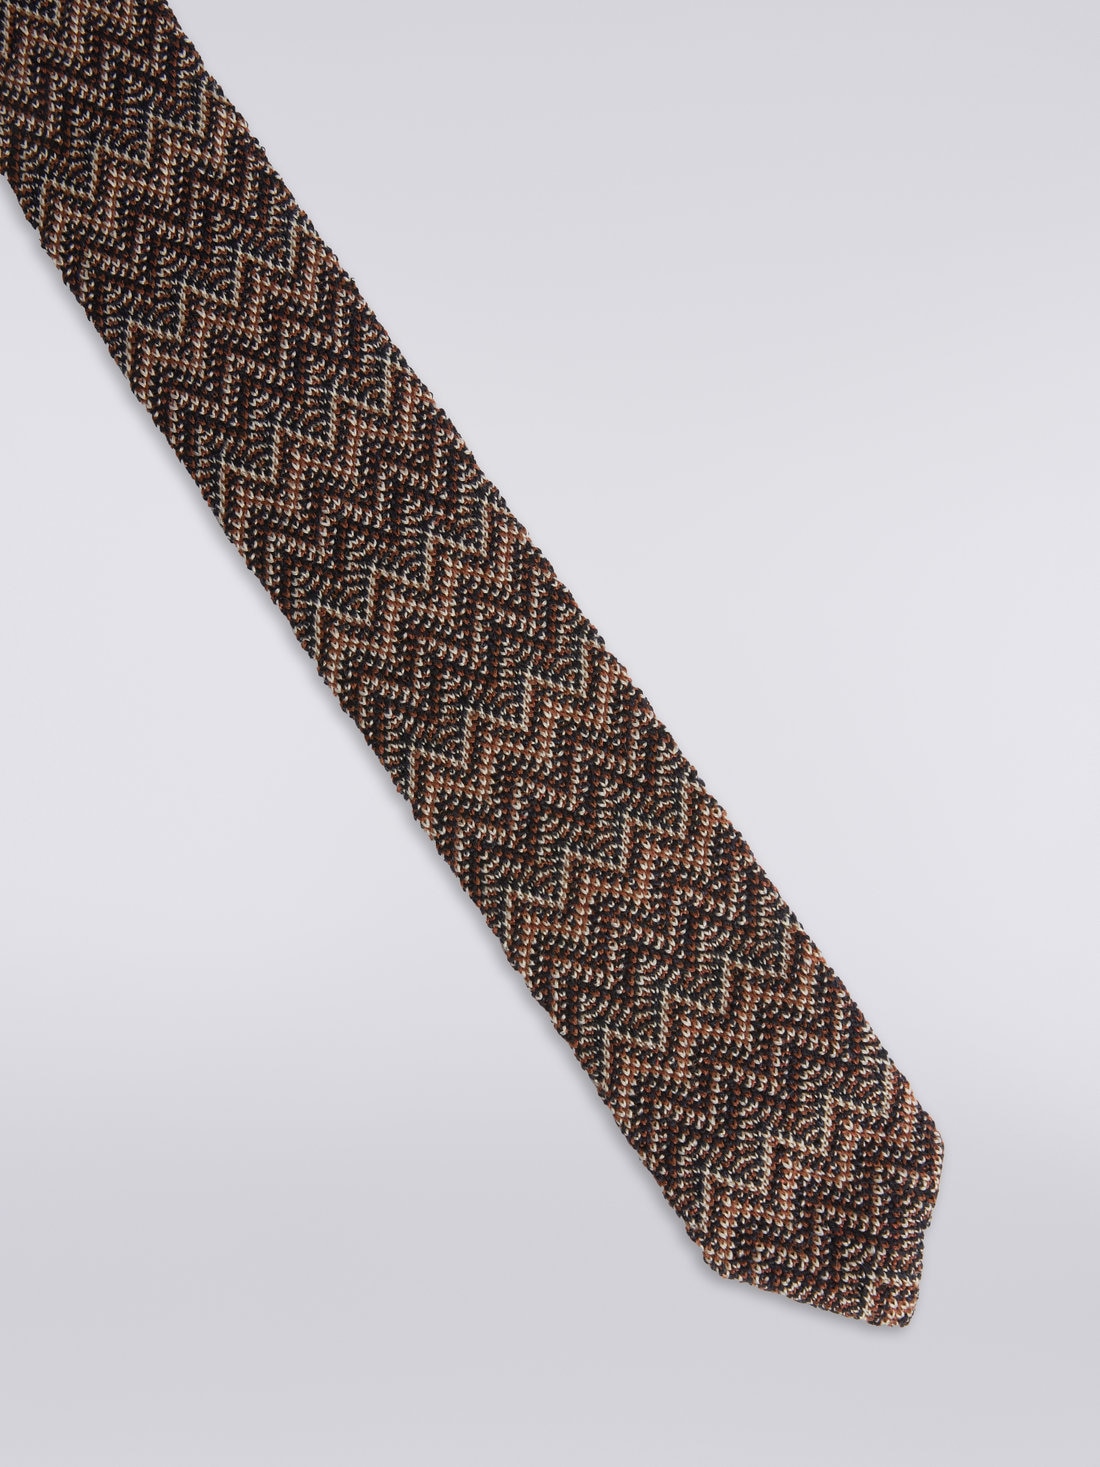 Cravatta in lana e seta chevron , Multicolore  - 8053147023434 - 1